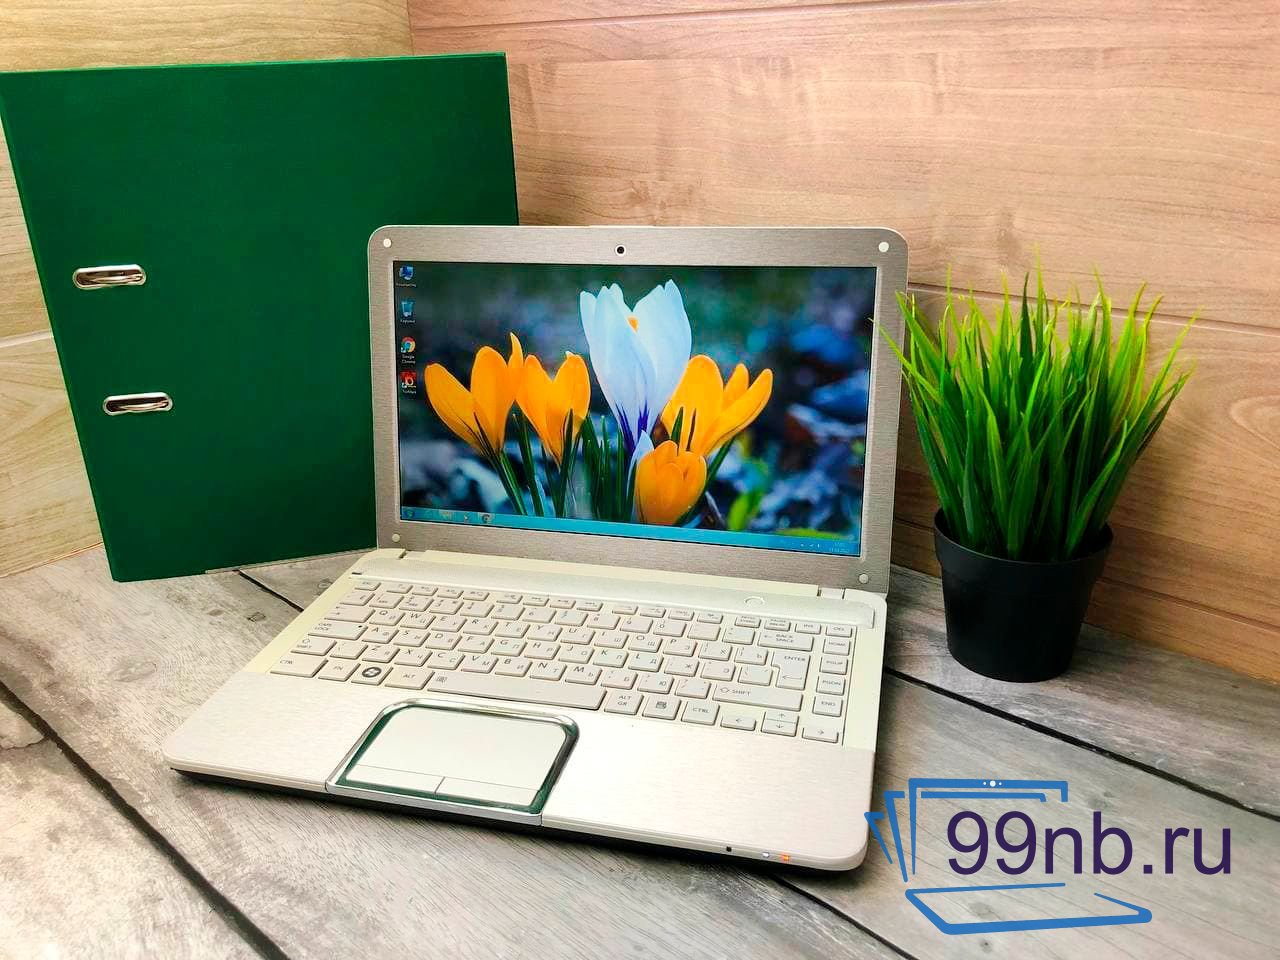  Белый ноутбук Toshiba для работы и учёбы